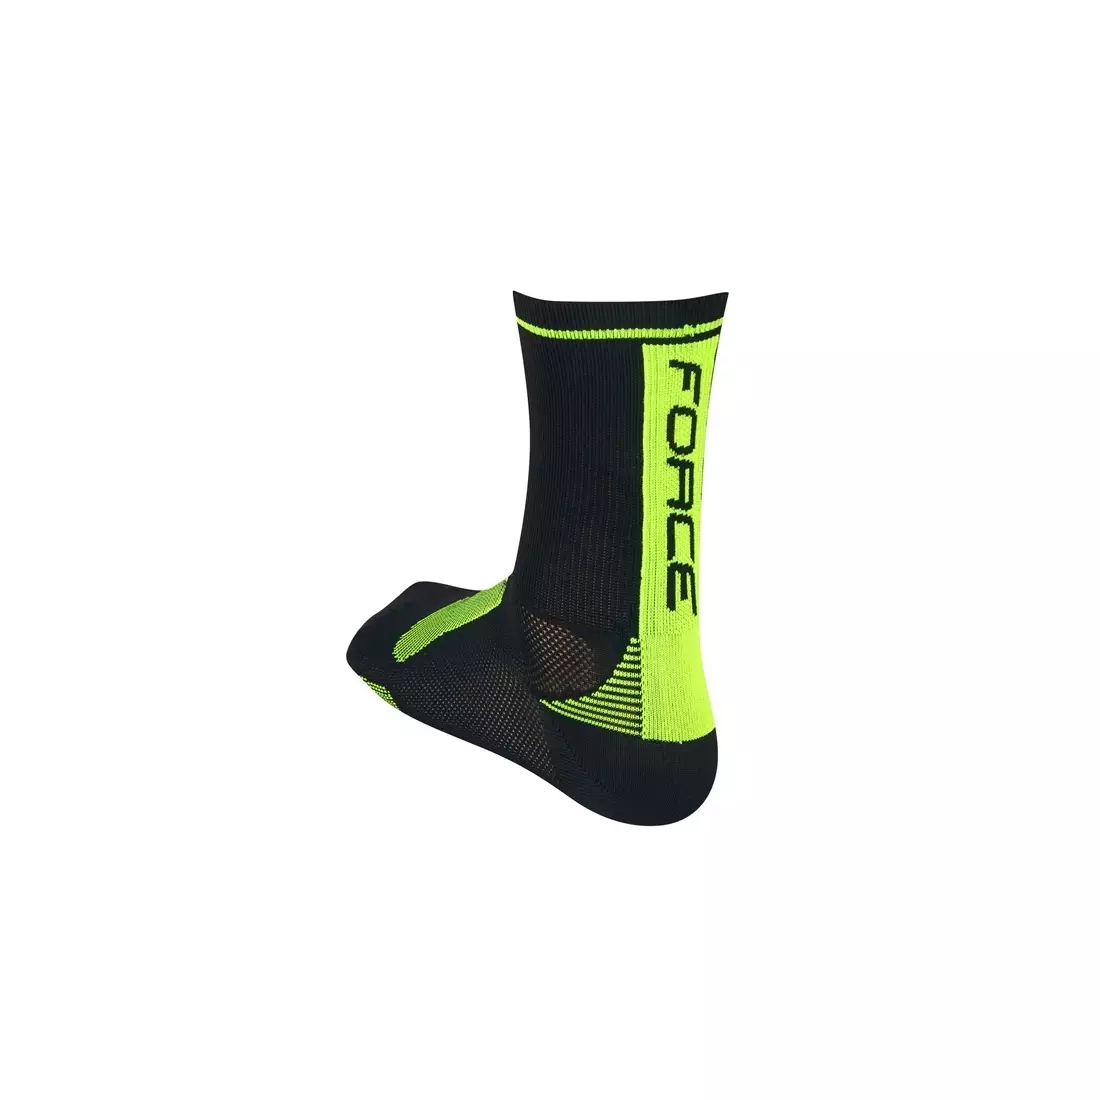 FORCE LONG sports socks black-fluor